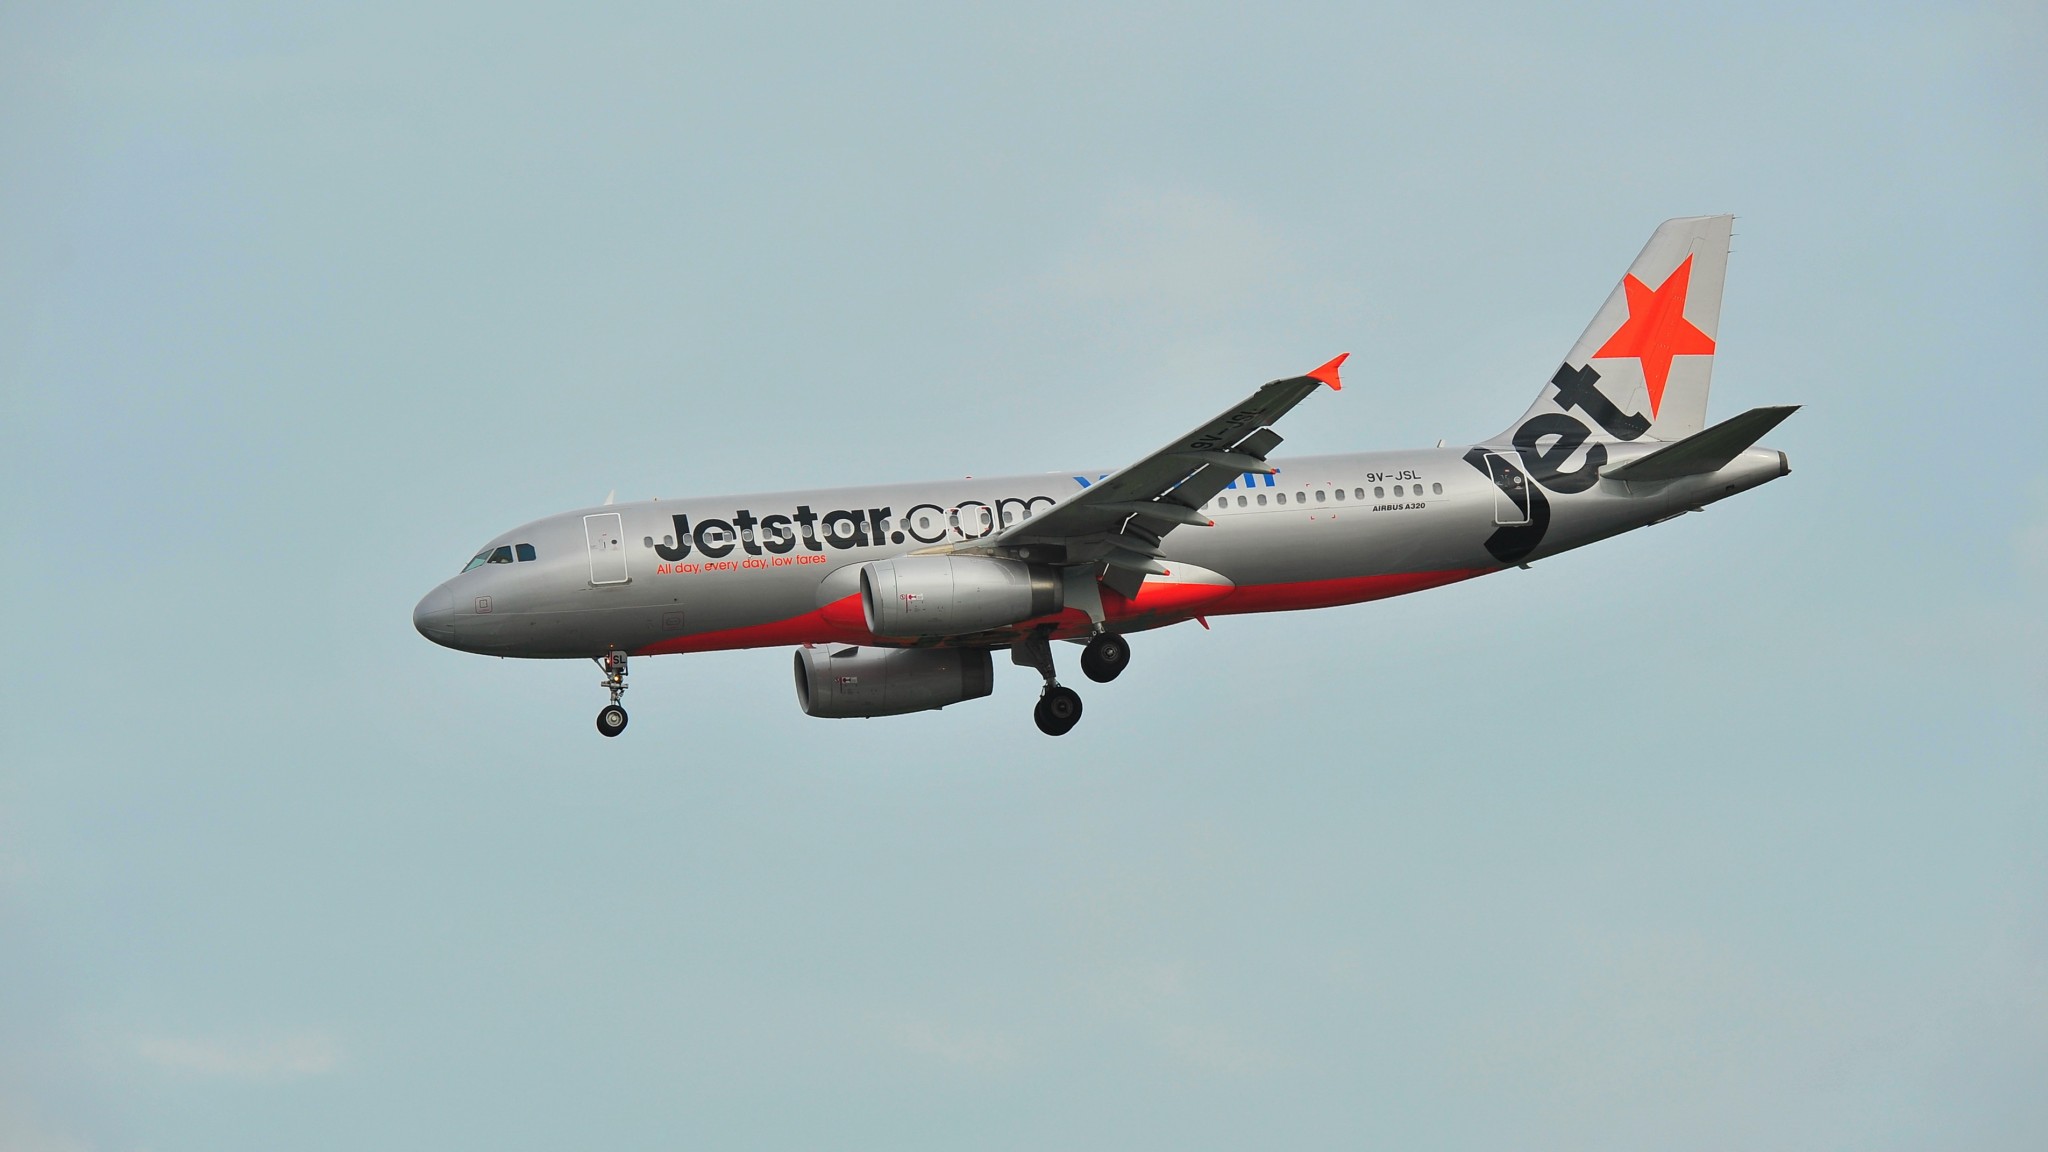 Jetstar launches direct flights between Australia and Cook Islands